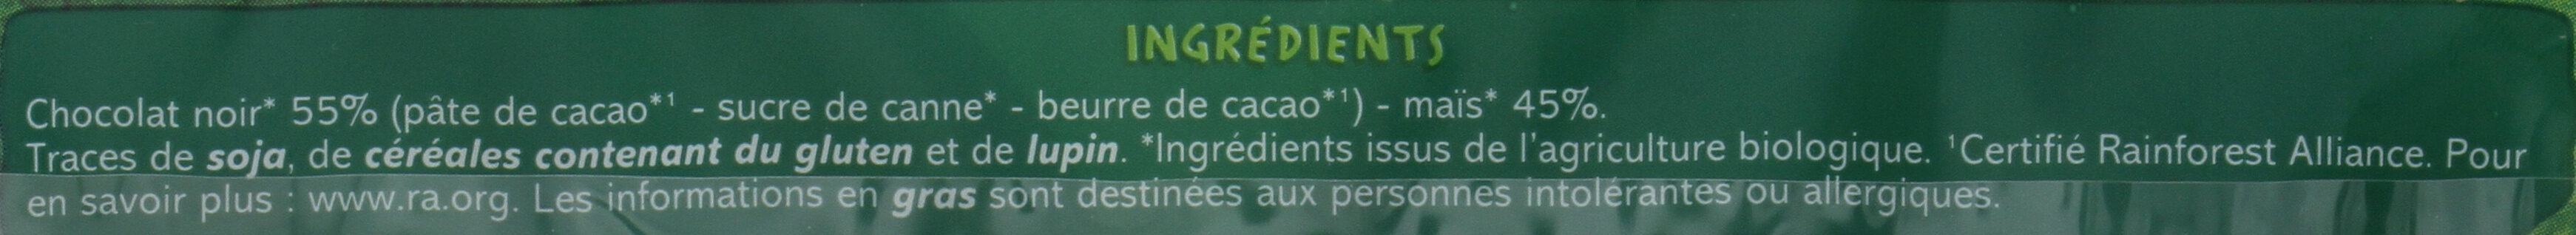 Galettes de maïs au chocolat noir bio - Ingredients - fr